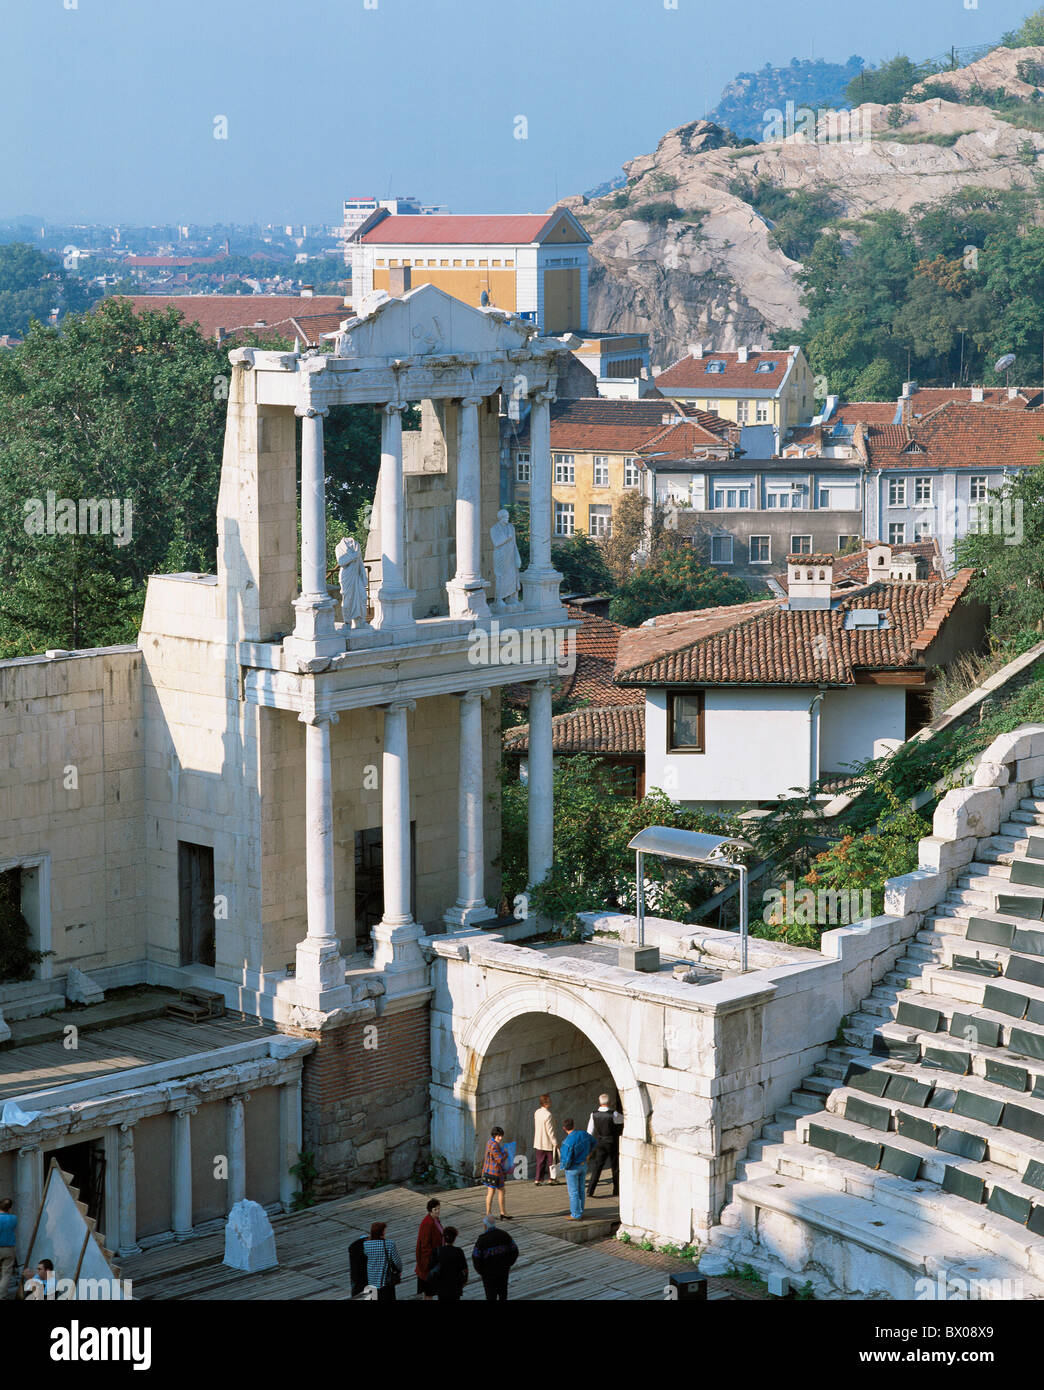 Coupe une partie de l'amphithéâtre romain de Plovdiv Bulgarie antique romaine antiquité antiquité Banque D'Images